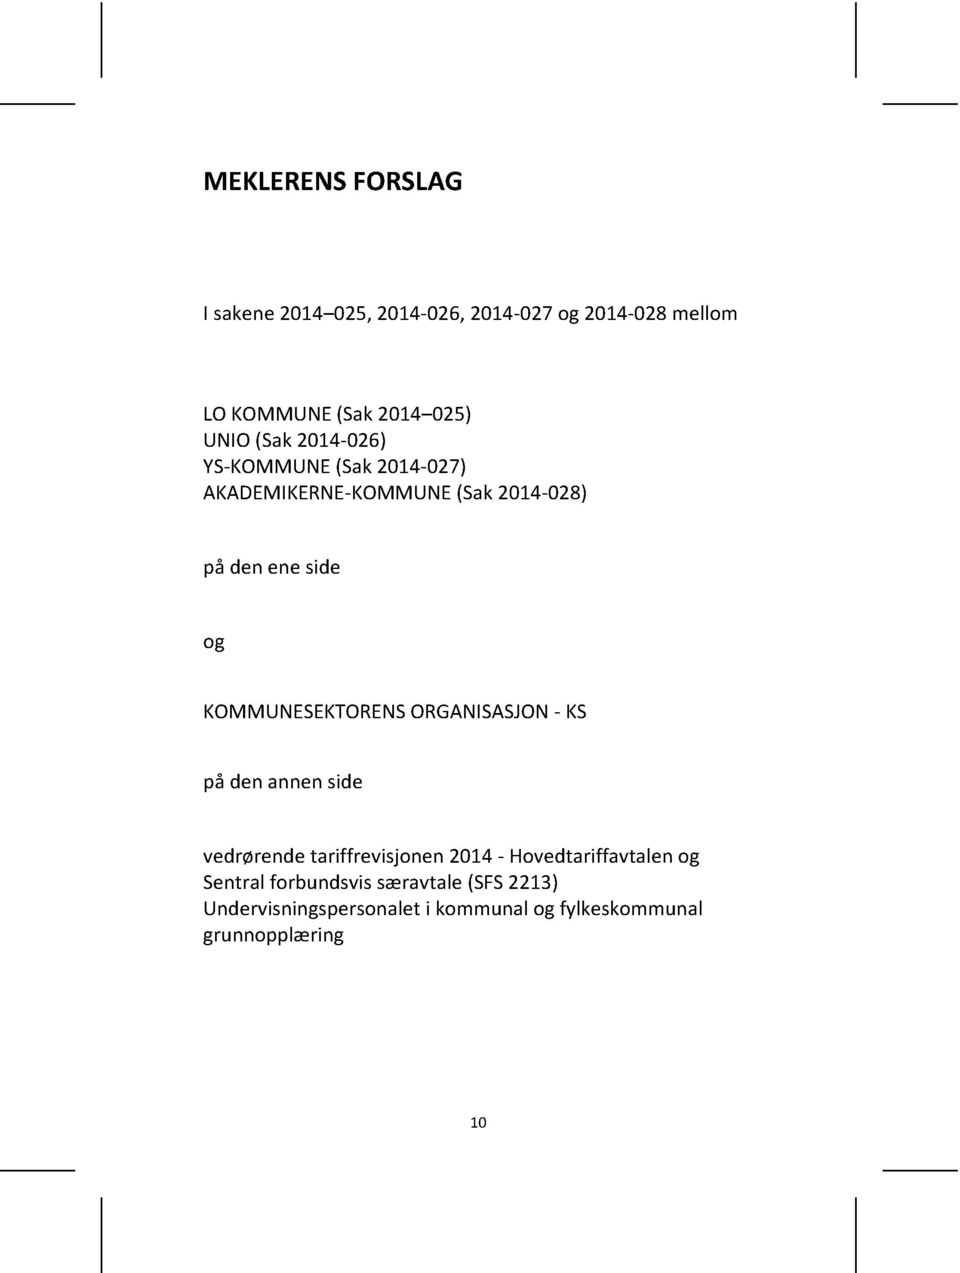 KOMMUNESEKTORENS ORGANISASJON - KS på denannenside vedrørendetariffrevisjonen2014-